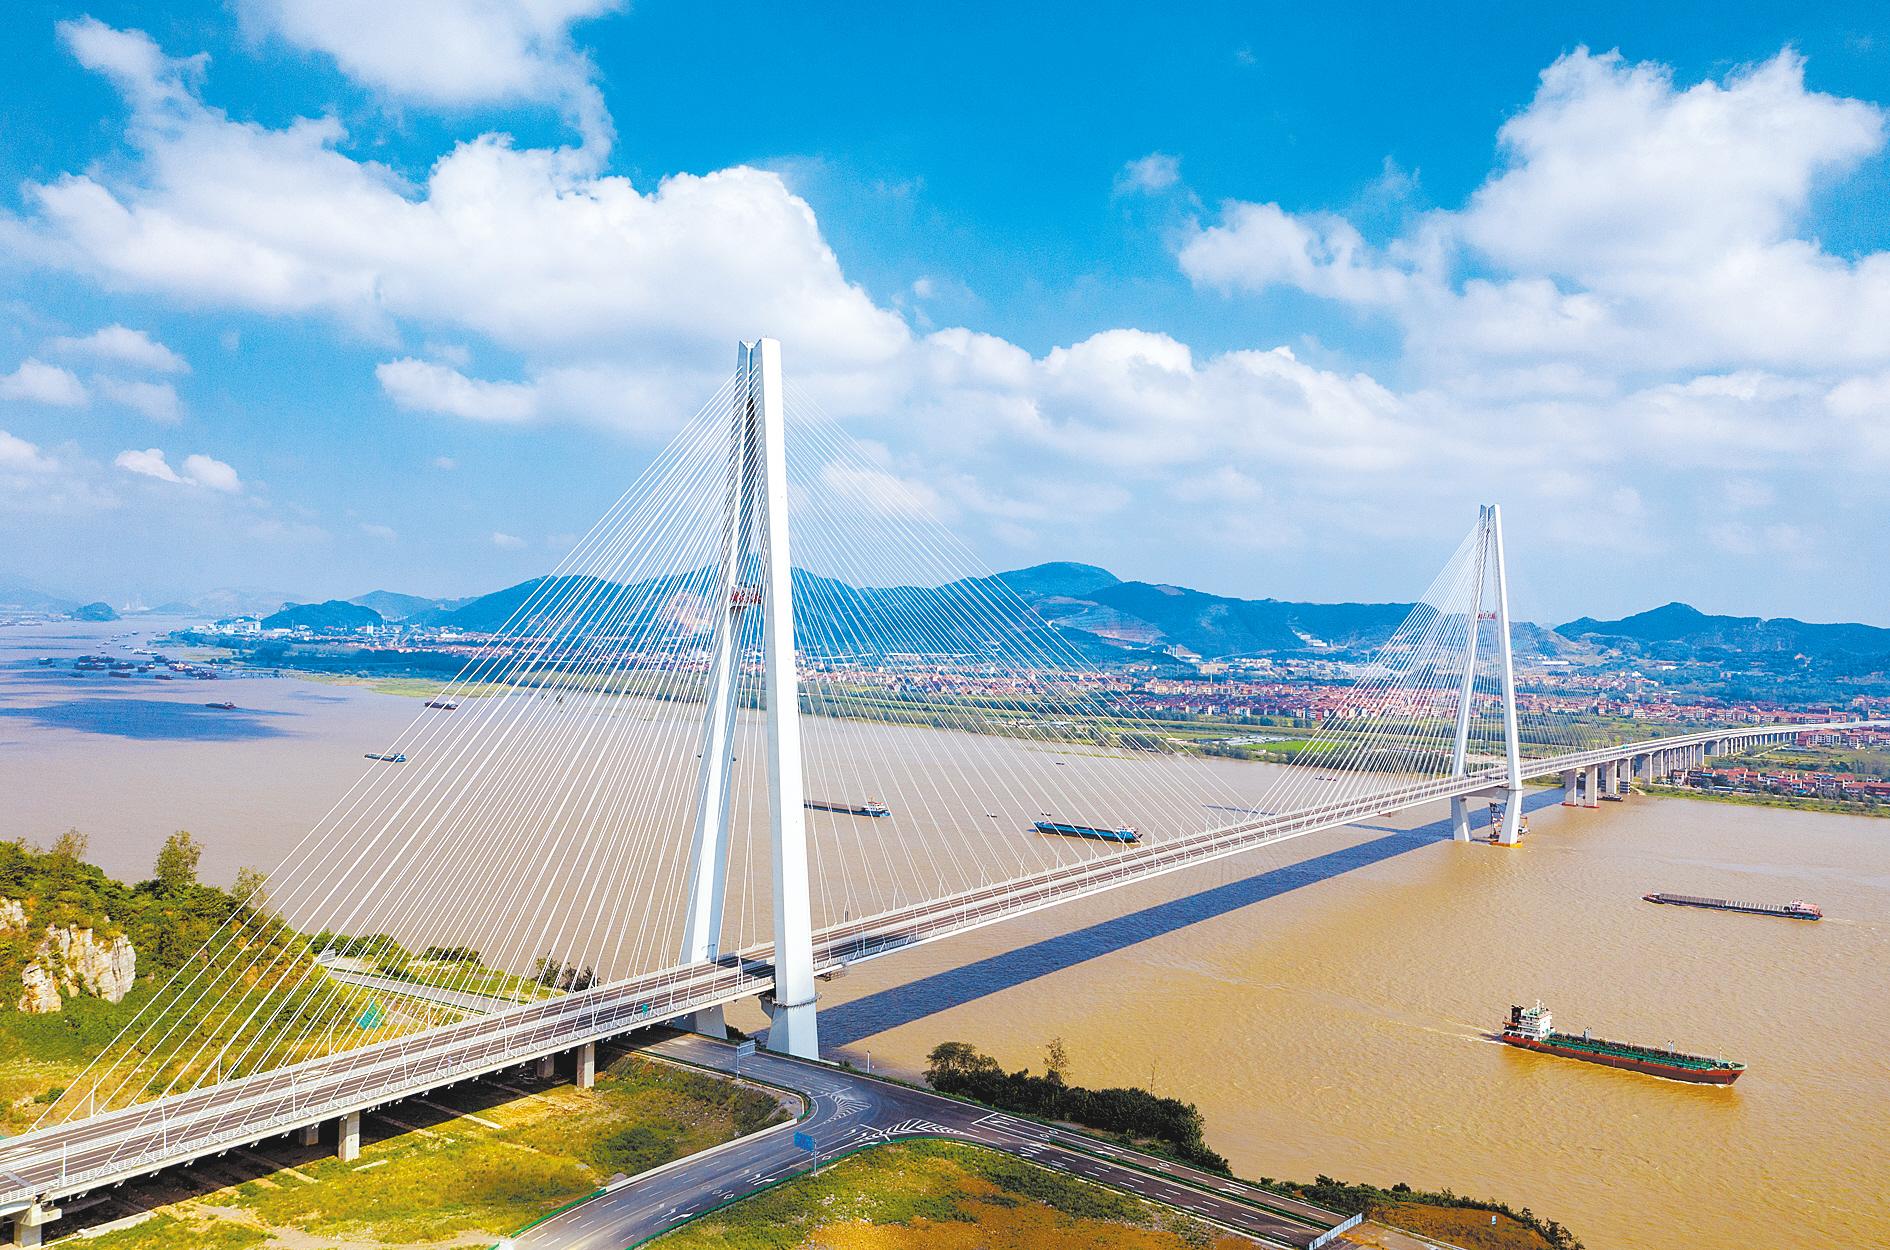 世界最大跨度结合梁斜拉桥——赤壁长江公路大桥正式通车运营-中国科普网